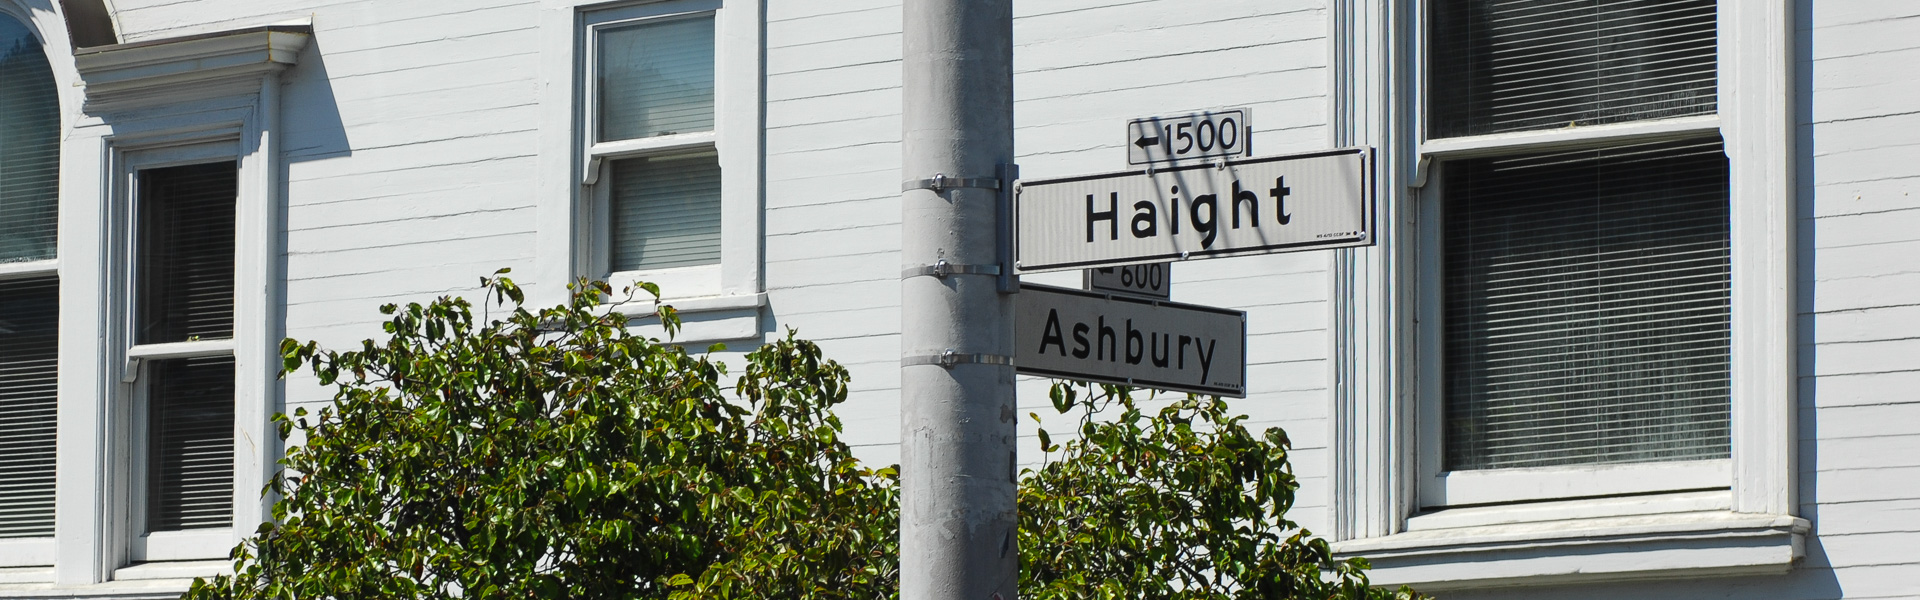 Haight - Ashbury, flower power hometown